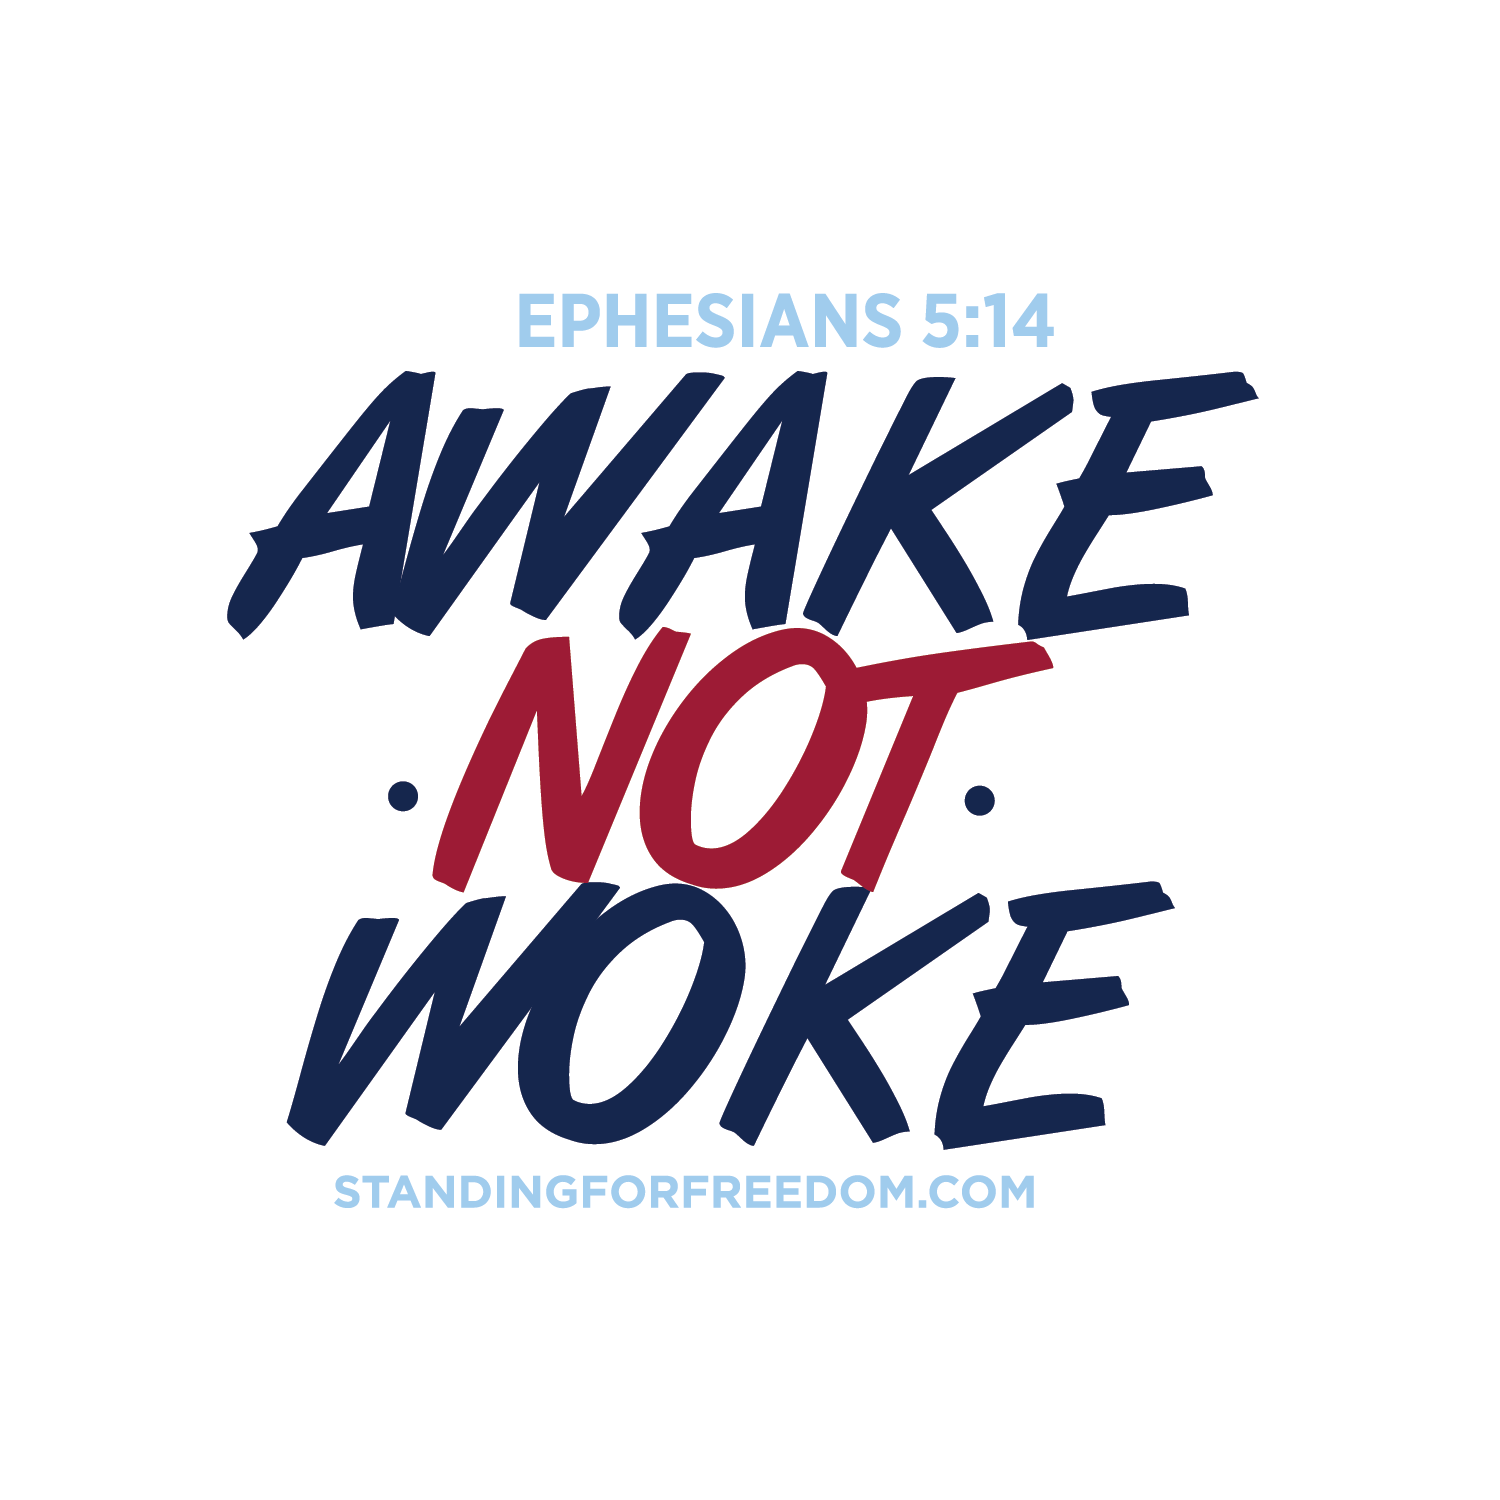 Awake not woke sticker